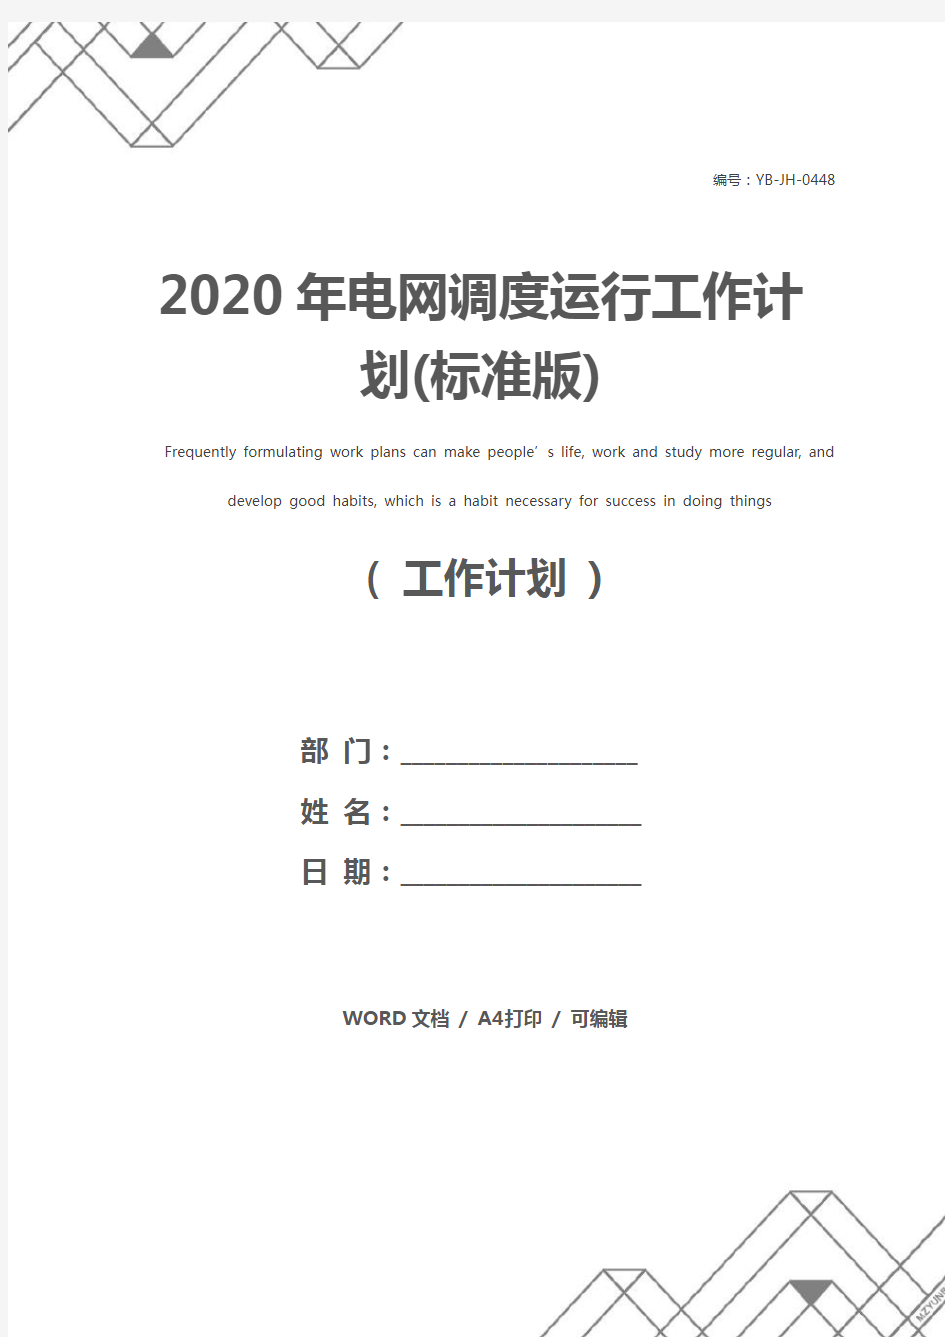 2020年电网调度运行工作计划(标准版)